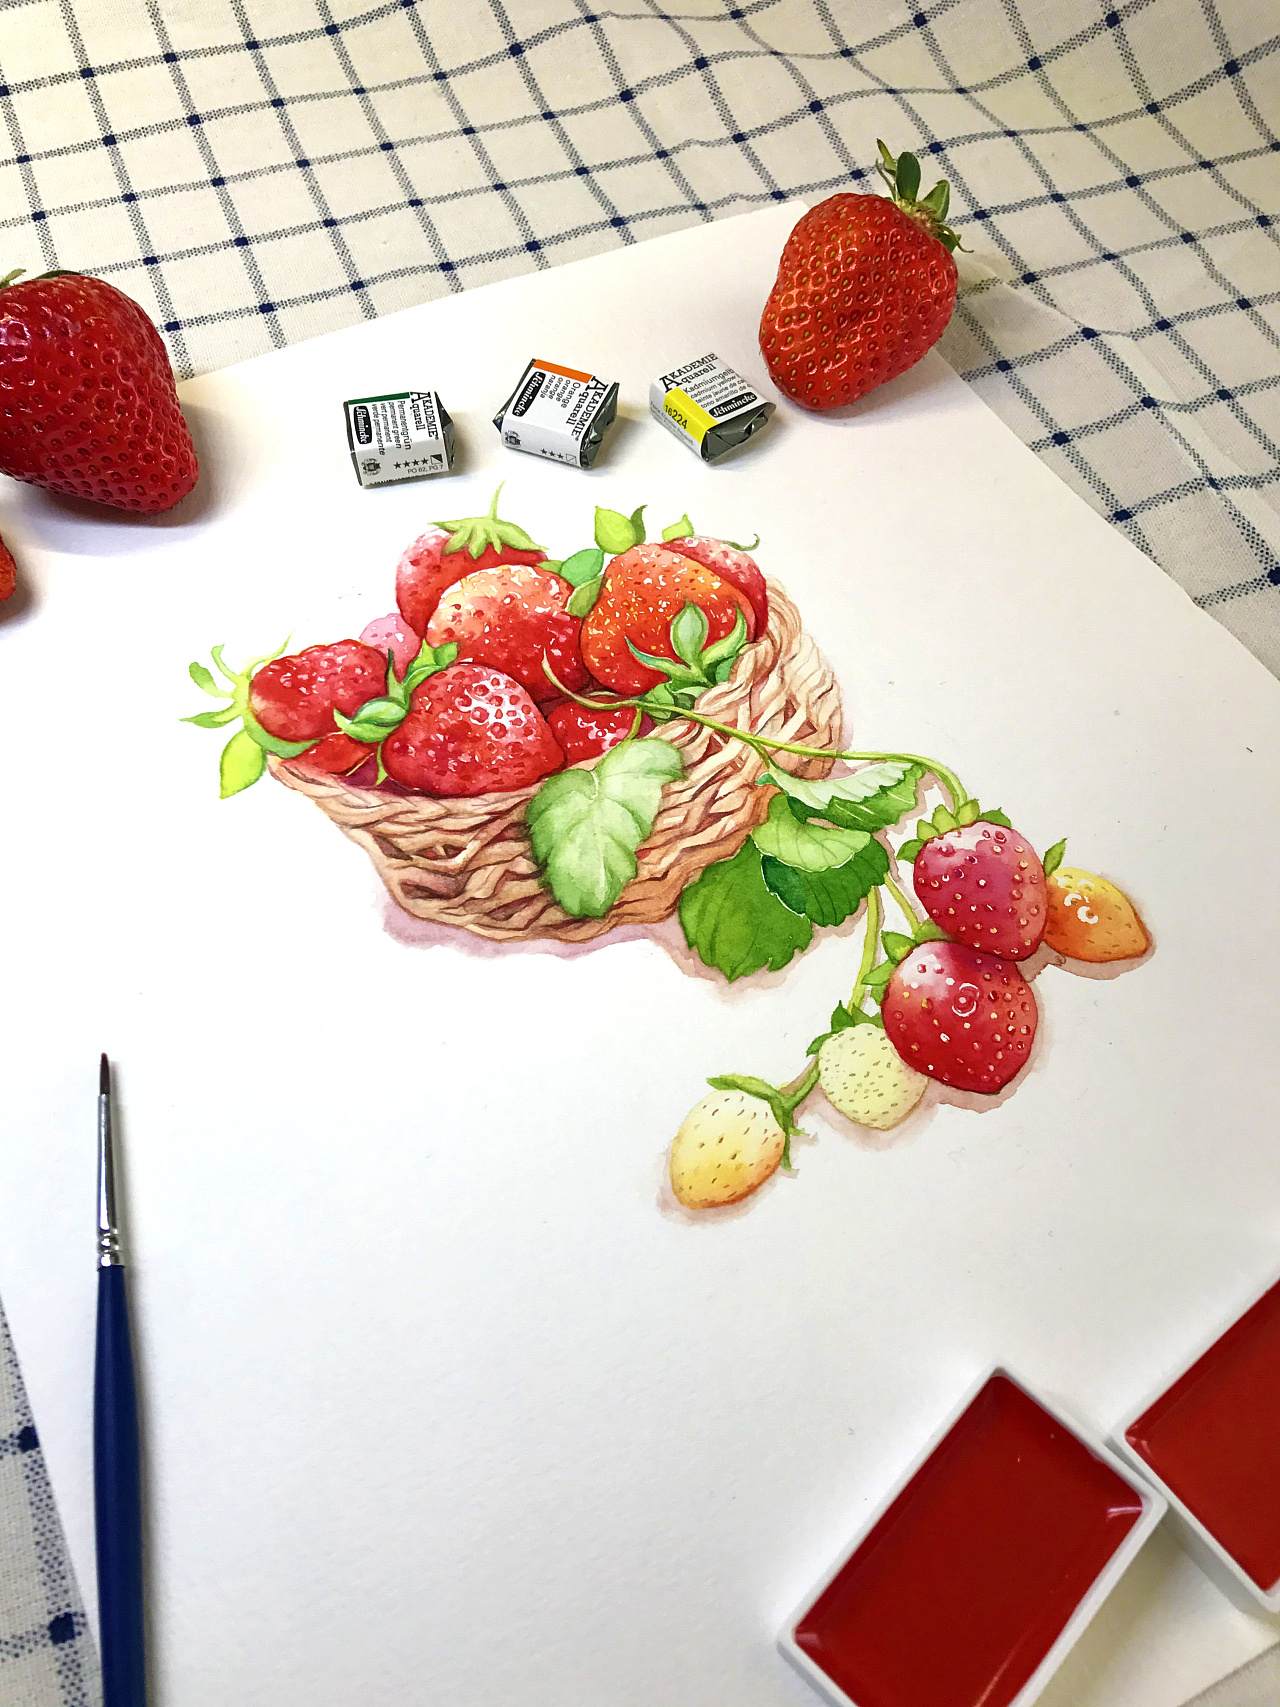 美食 果盘 葡萄 草莓 水果 4K壁纸壁纸(小清新静态壁纸) - 静态壁纸下载 - 元气壁纸